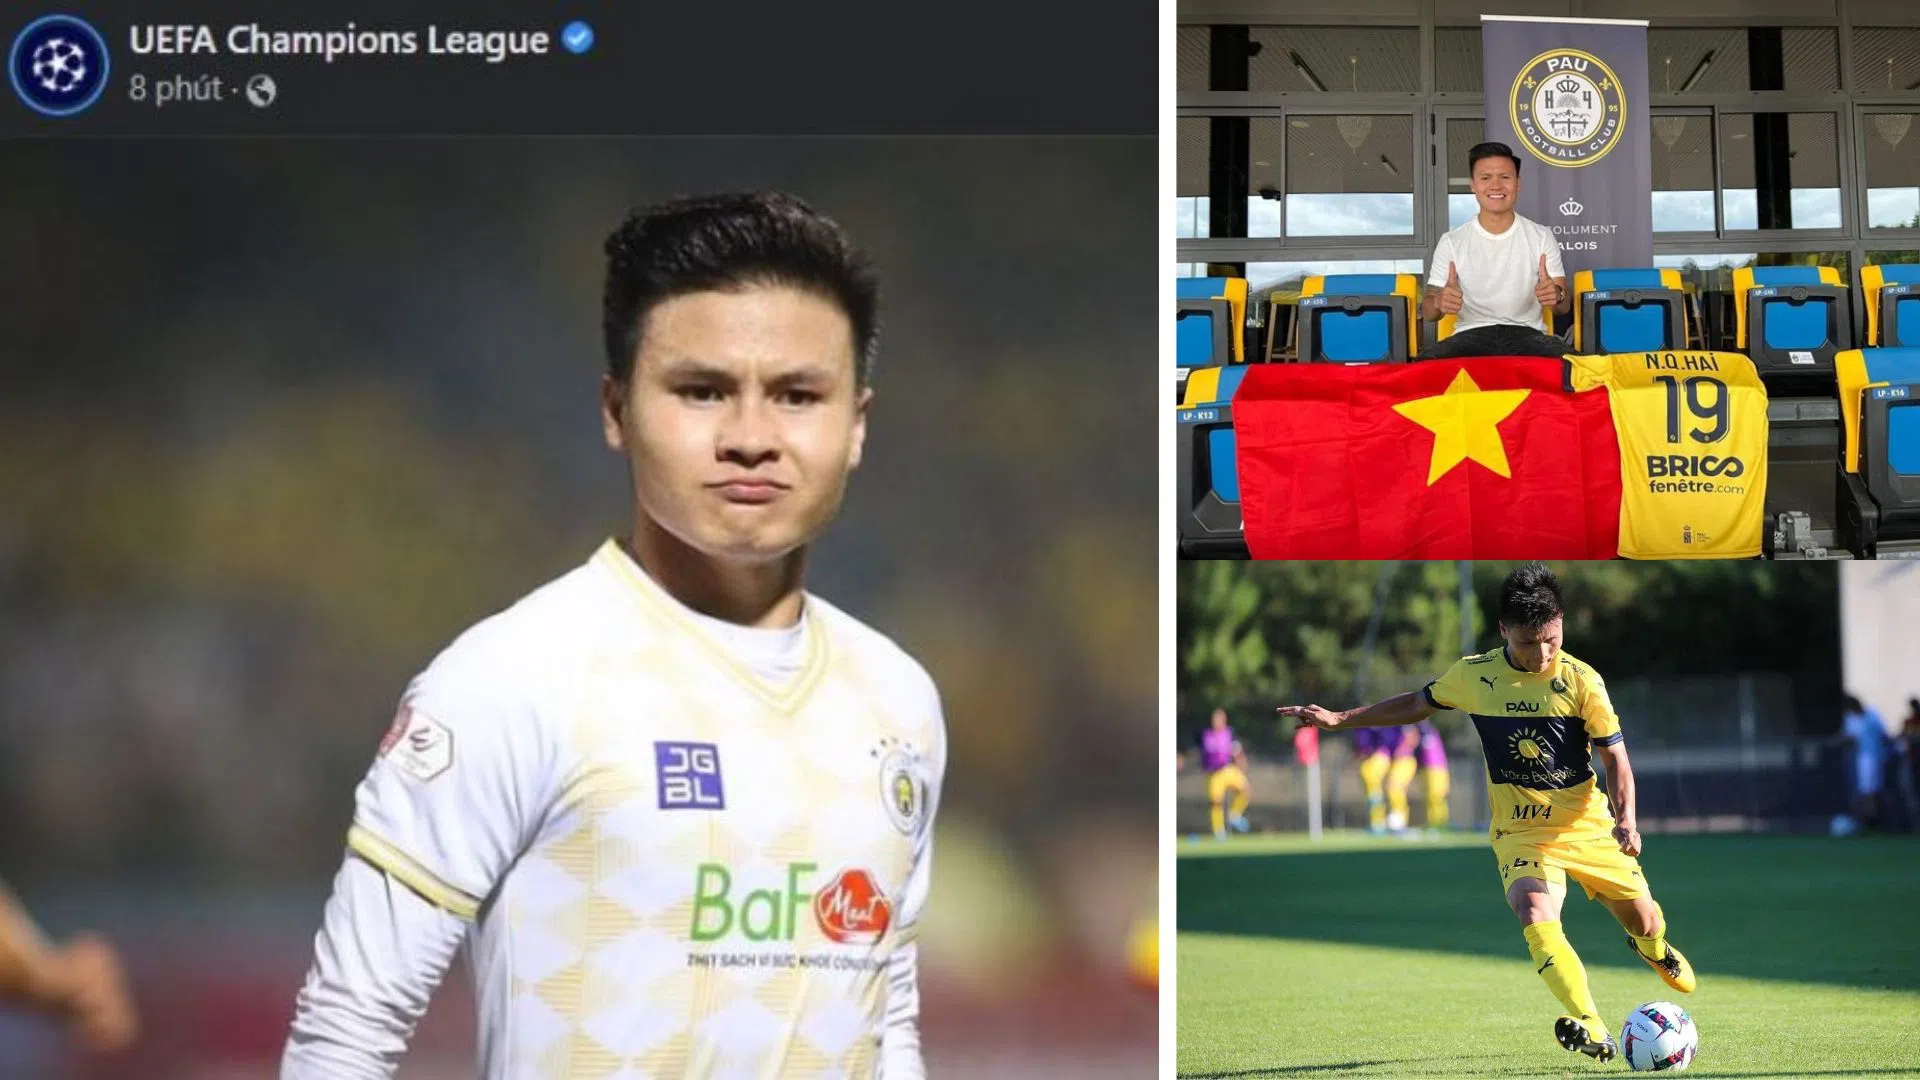 NÓNG: Quang Hải xuất hiện trên Fanpage UEFA Champions League, CĐM dậy sóng